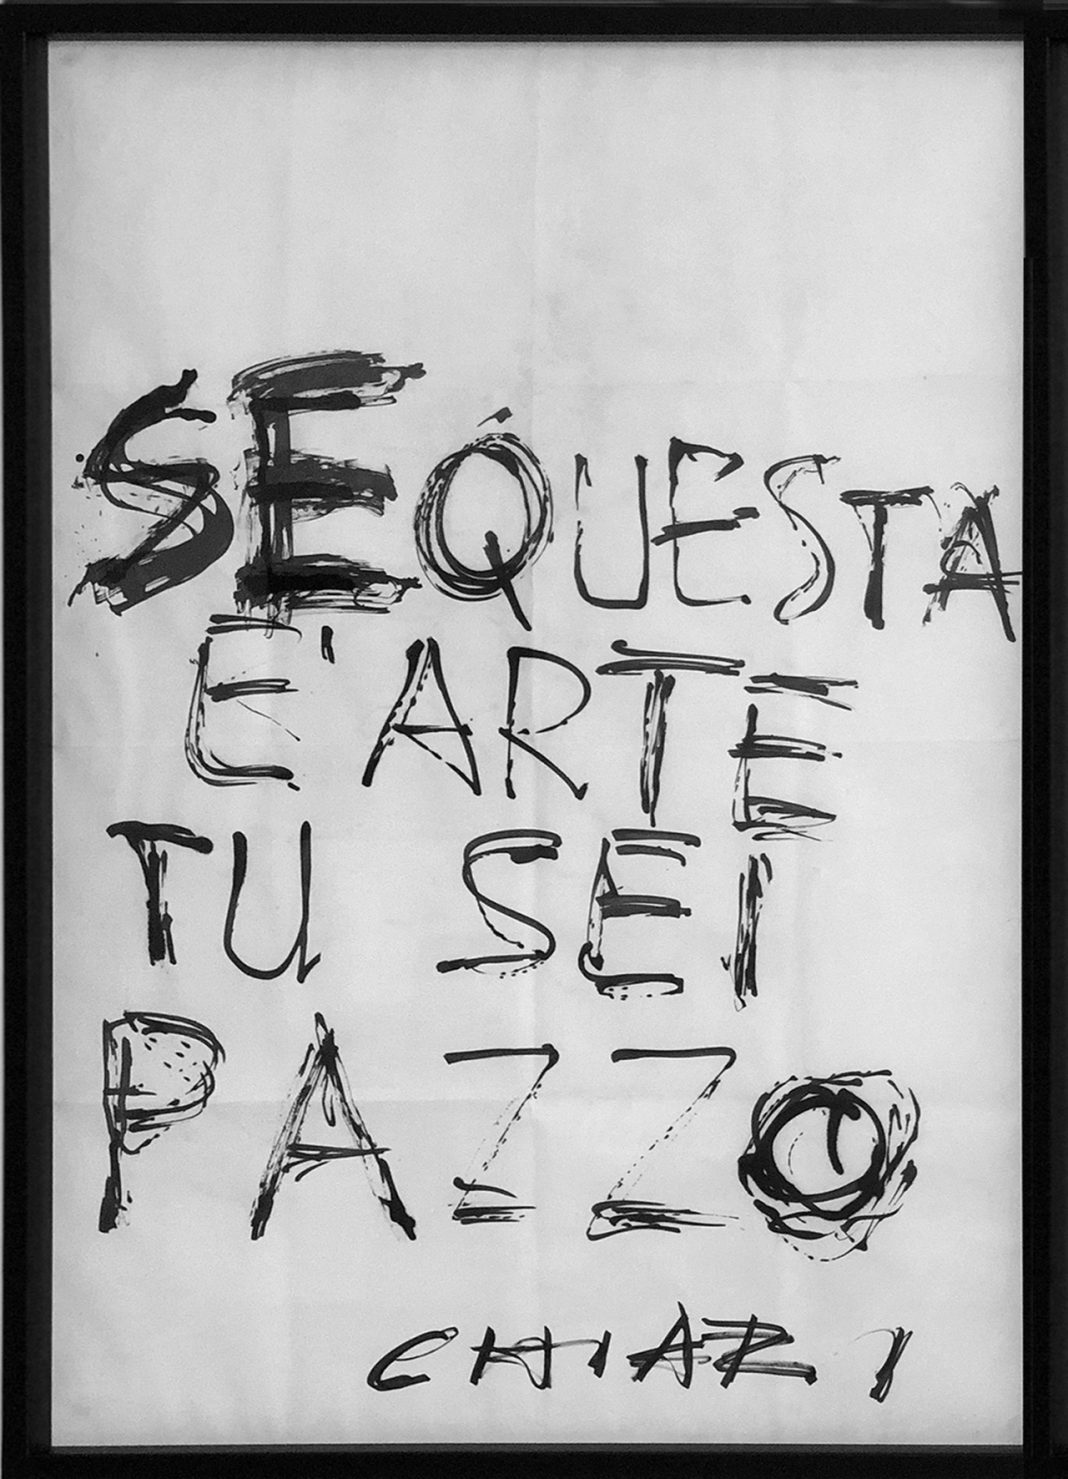 Mauro Dal Fior – Parole in Scenahttps://www.exibart.com/repository/media/formidable/11/Exibart-Giuseppe-Chiari-Se-questa-è-arte…-1994-pennarello-su-carta-70-x-100-cm-1-1068x1479.jpg